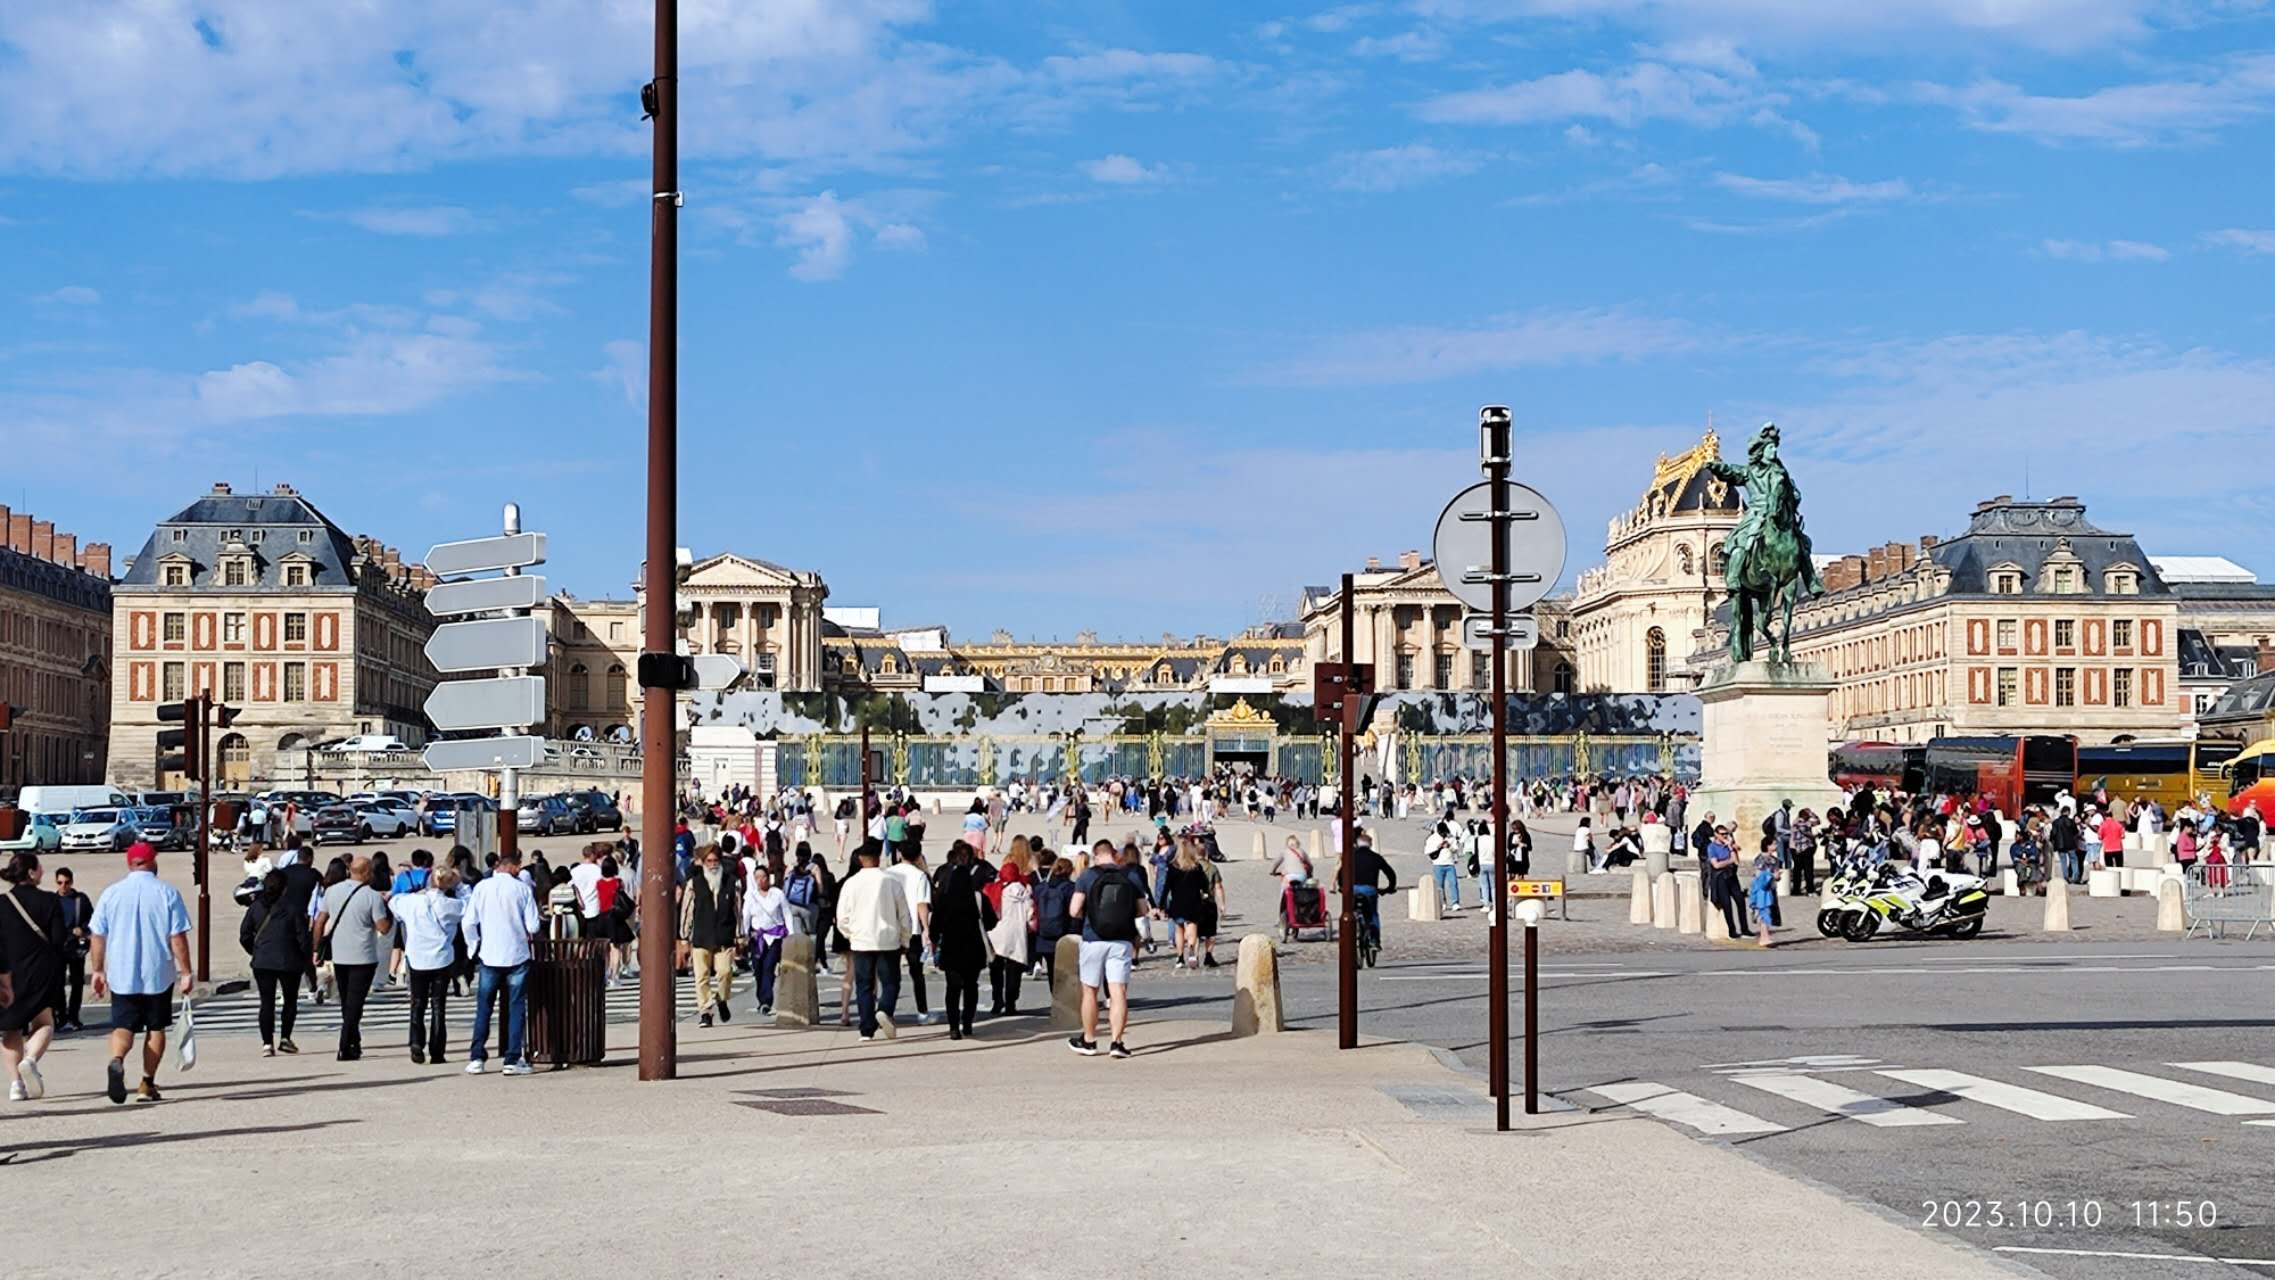 雄伟的凡尔赛宫，人超多，进去要排很长队。